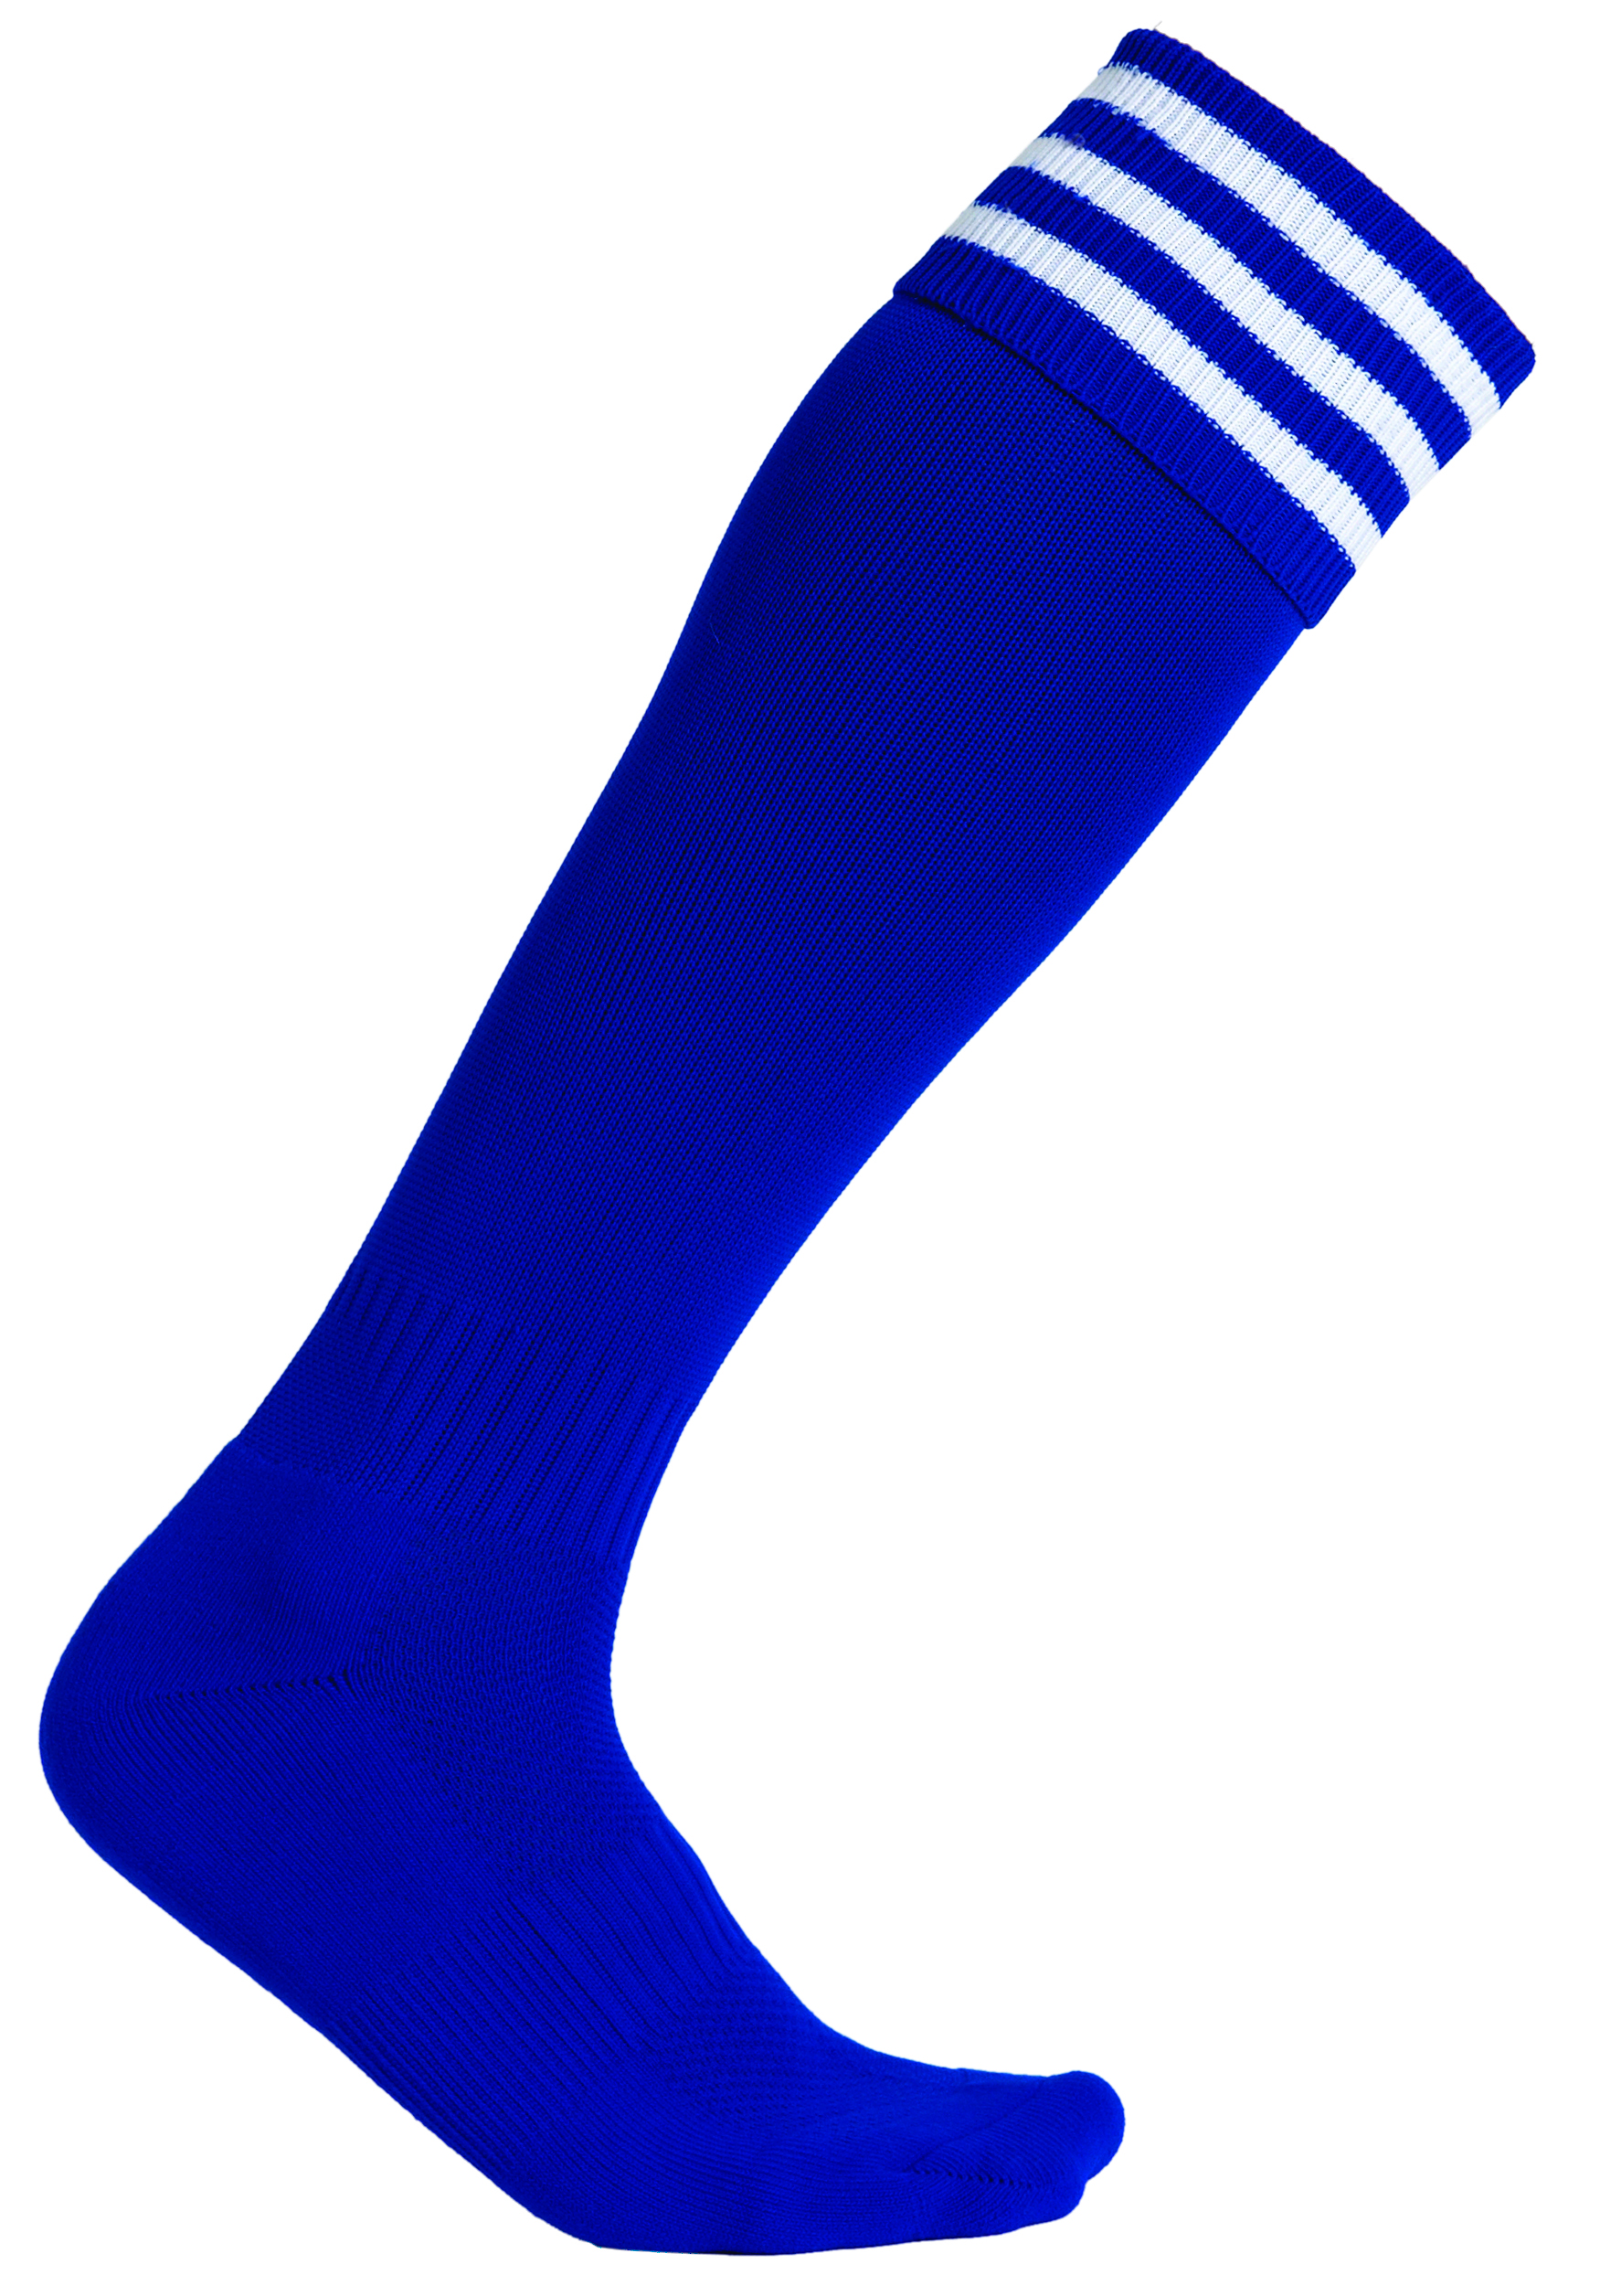 Falcon Pro-Weight Horizontal Bars Sports Socks